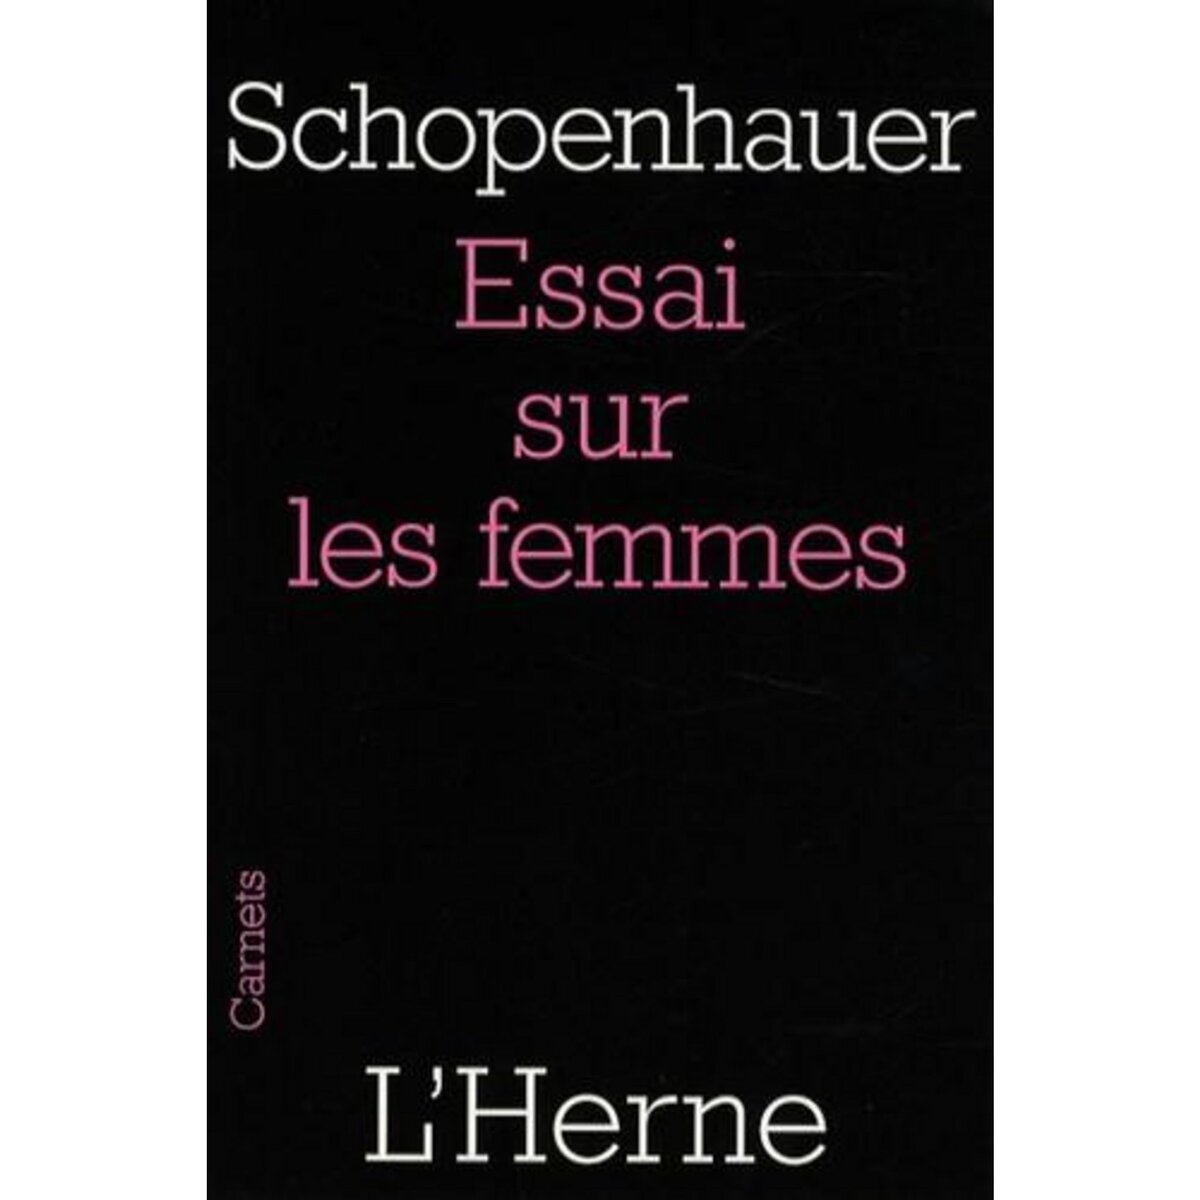  ESSAI SUR LES FEMMES, Schopenhauer Arthur